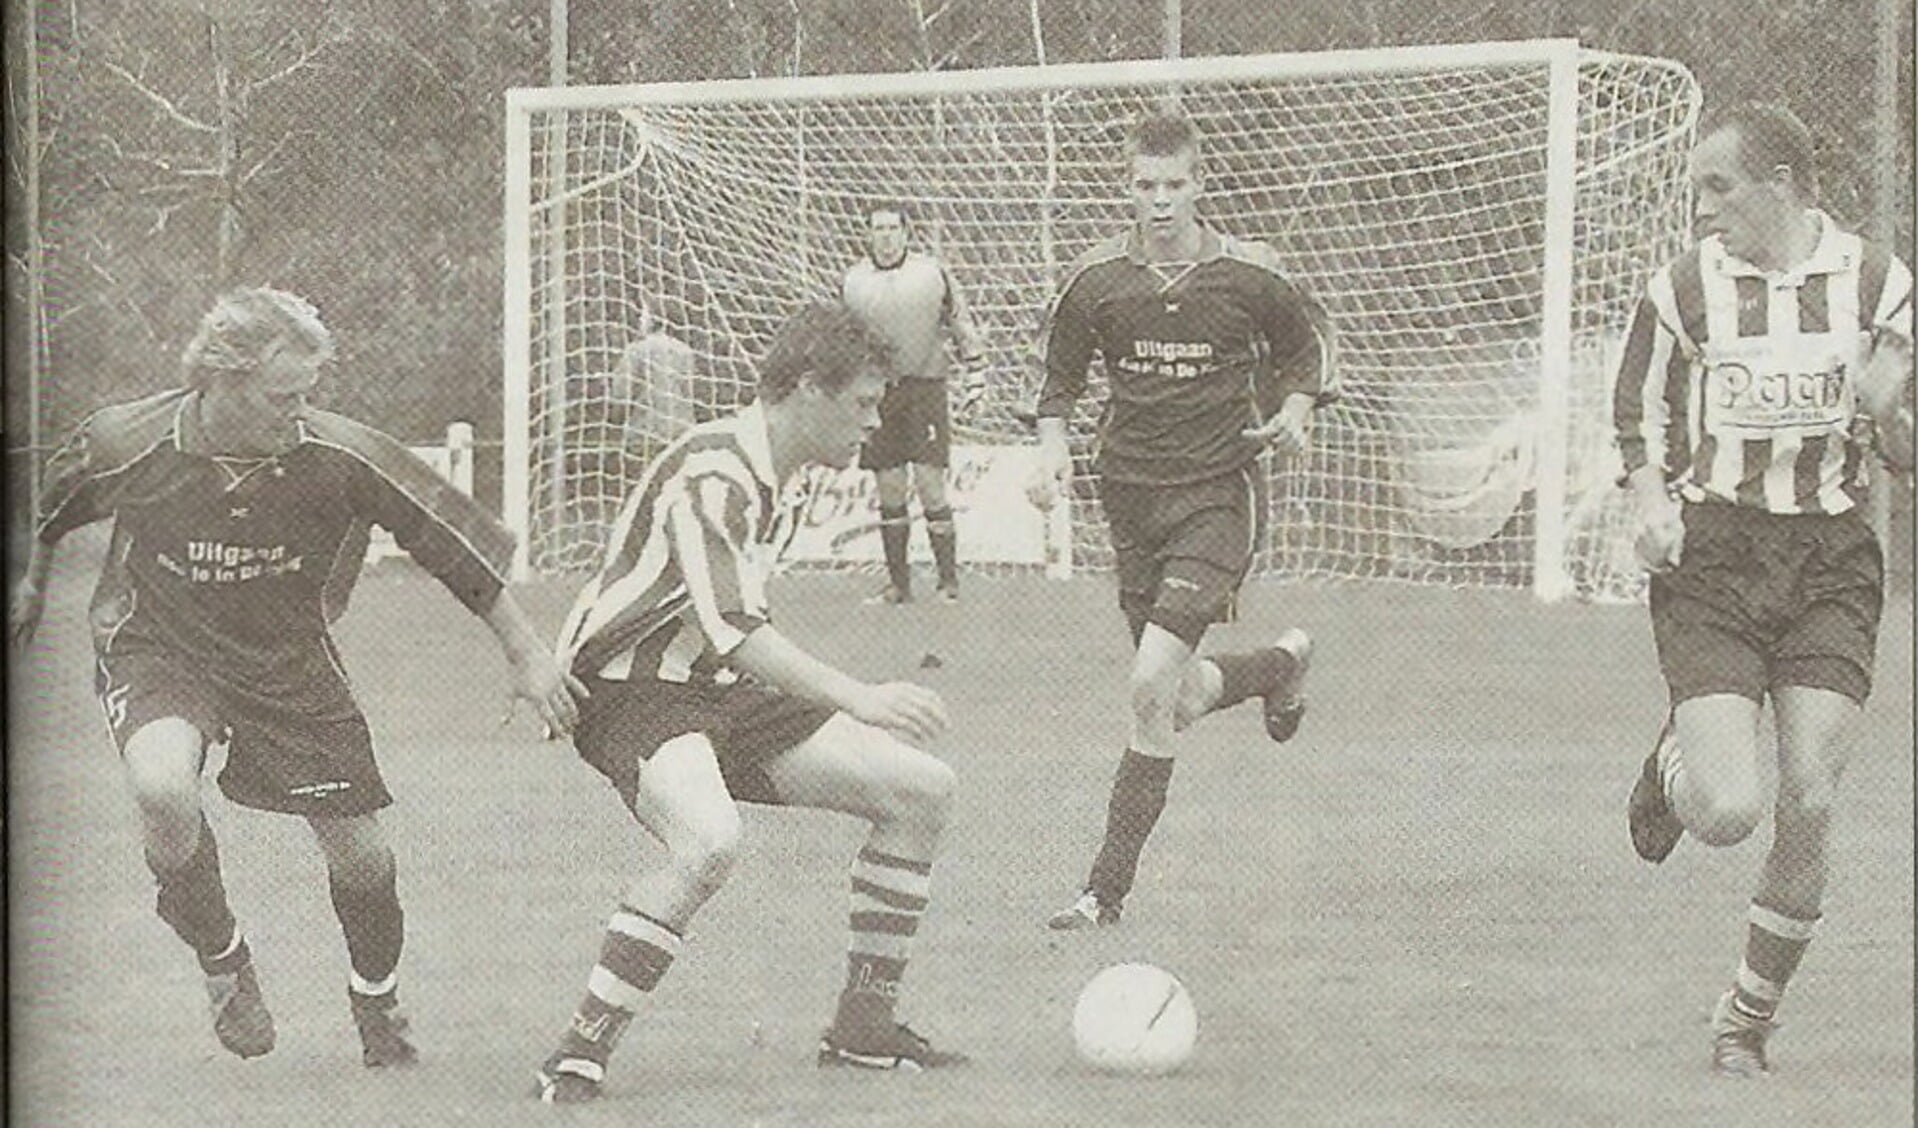 DE Koog en ZDH kwamen elkaar al vaak tegen, zoals hier in oktober 2005. De Koog won toen met 1-3 in Den Hoorn. 